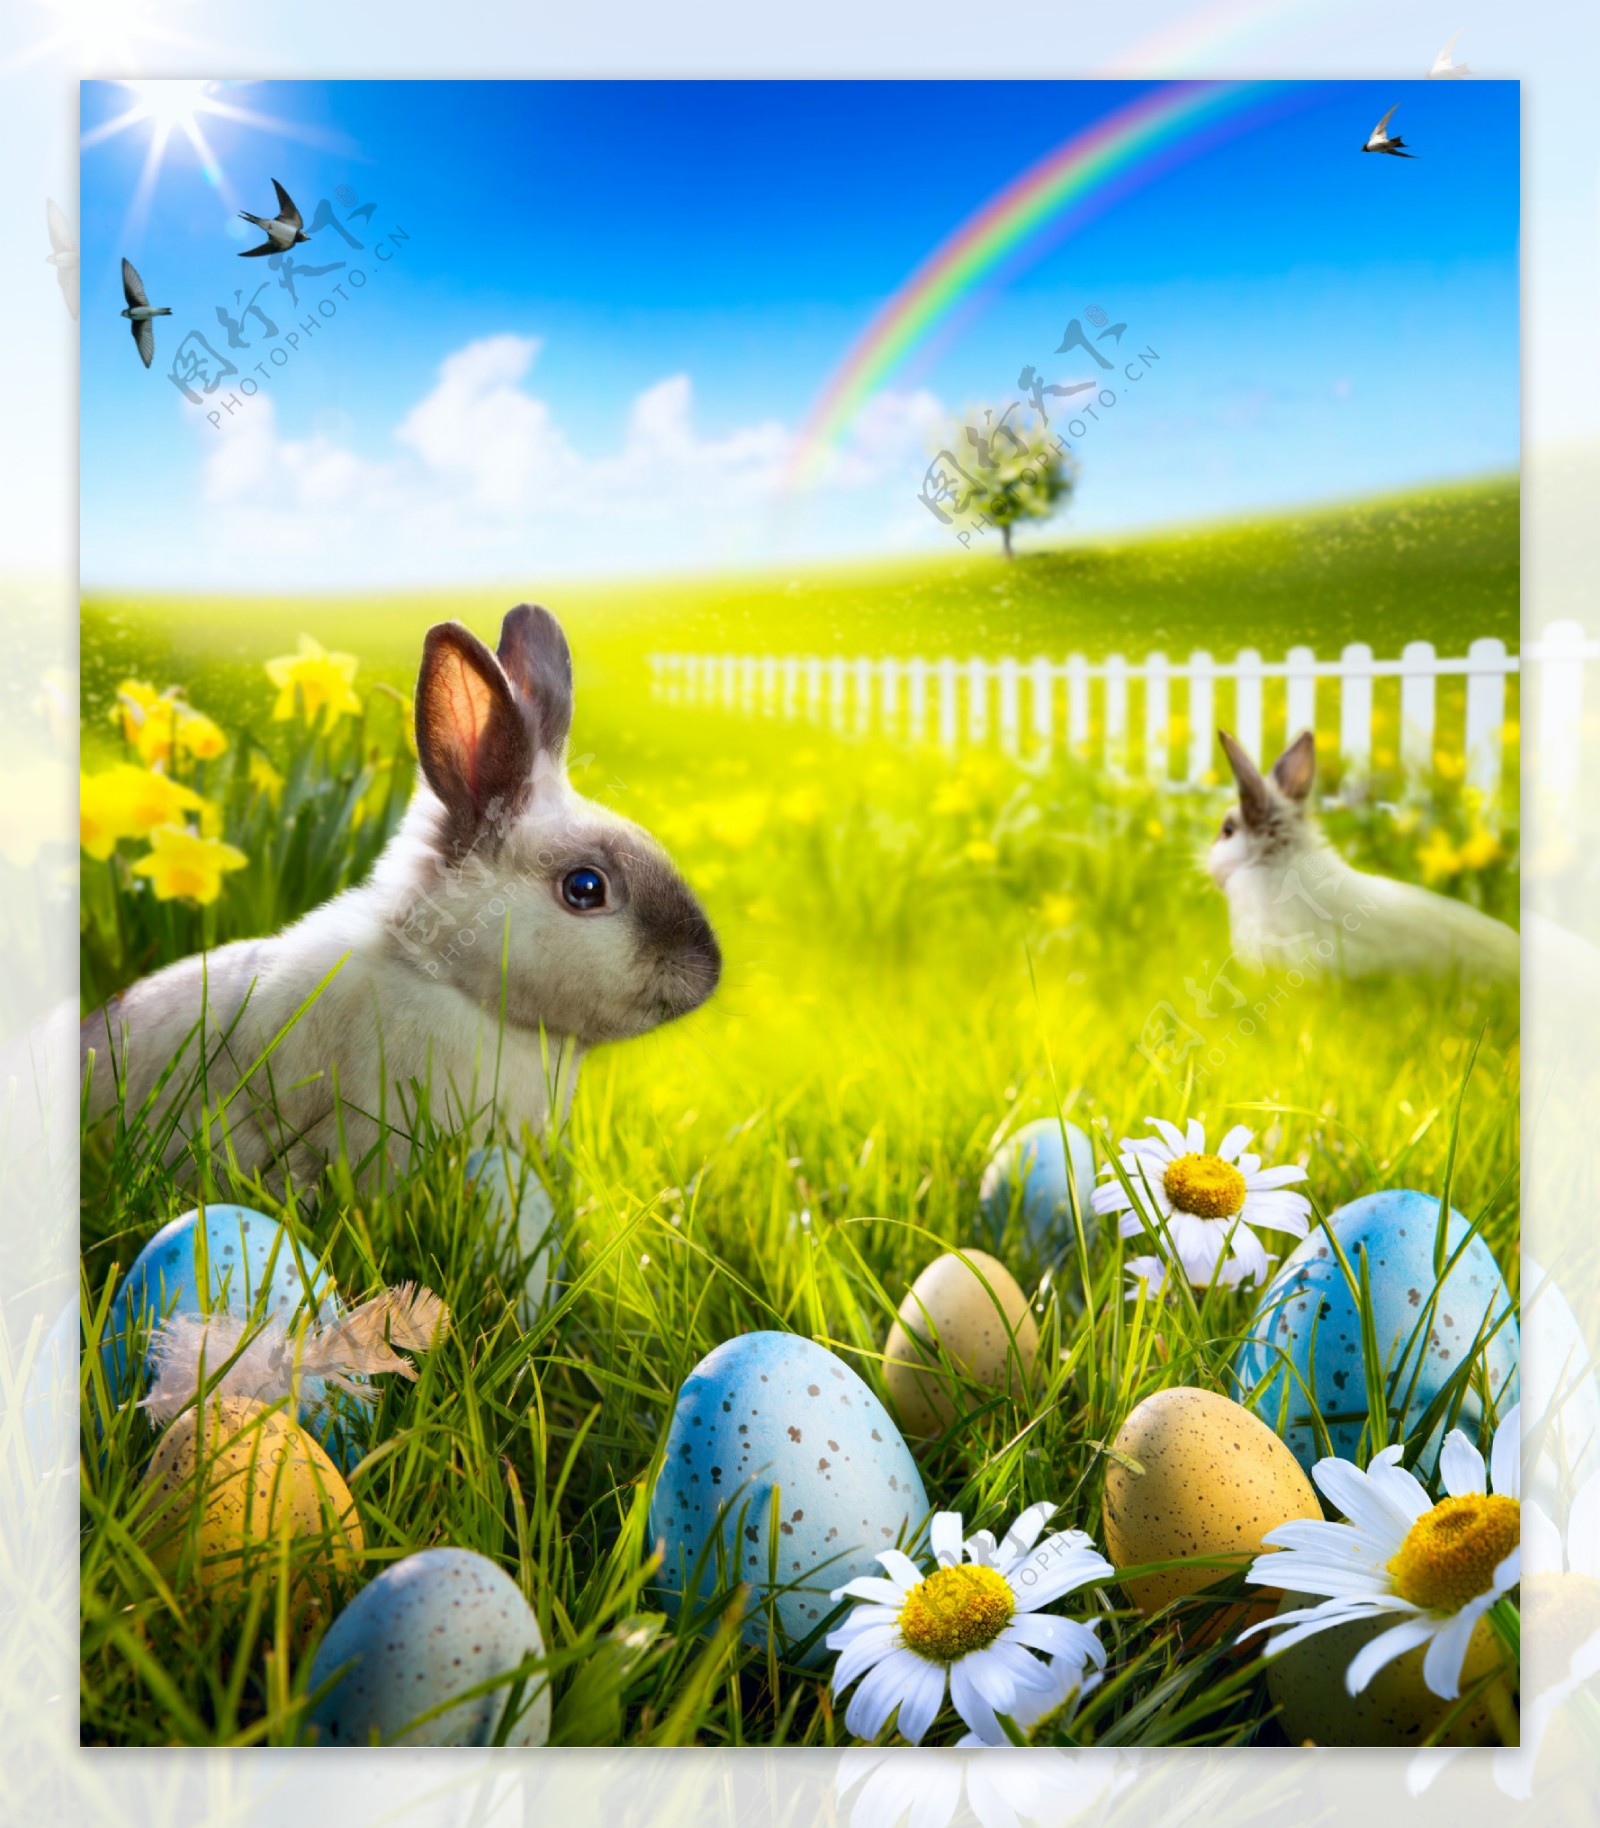 彩虹与复活节彩蛋兔子图片